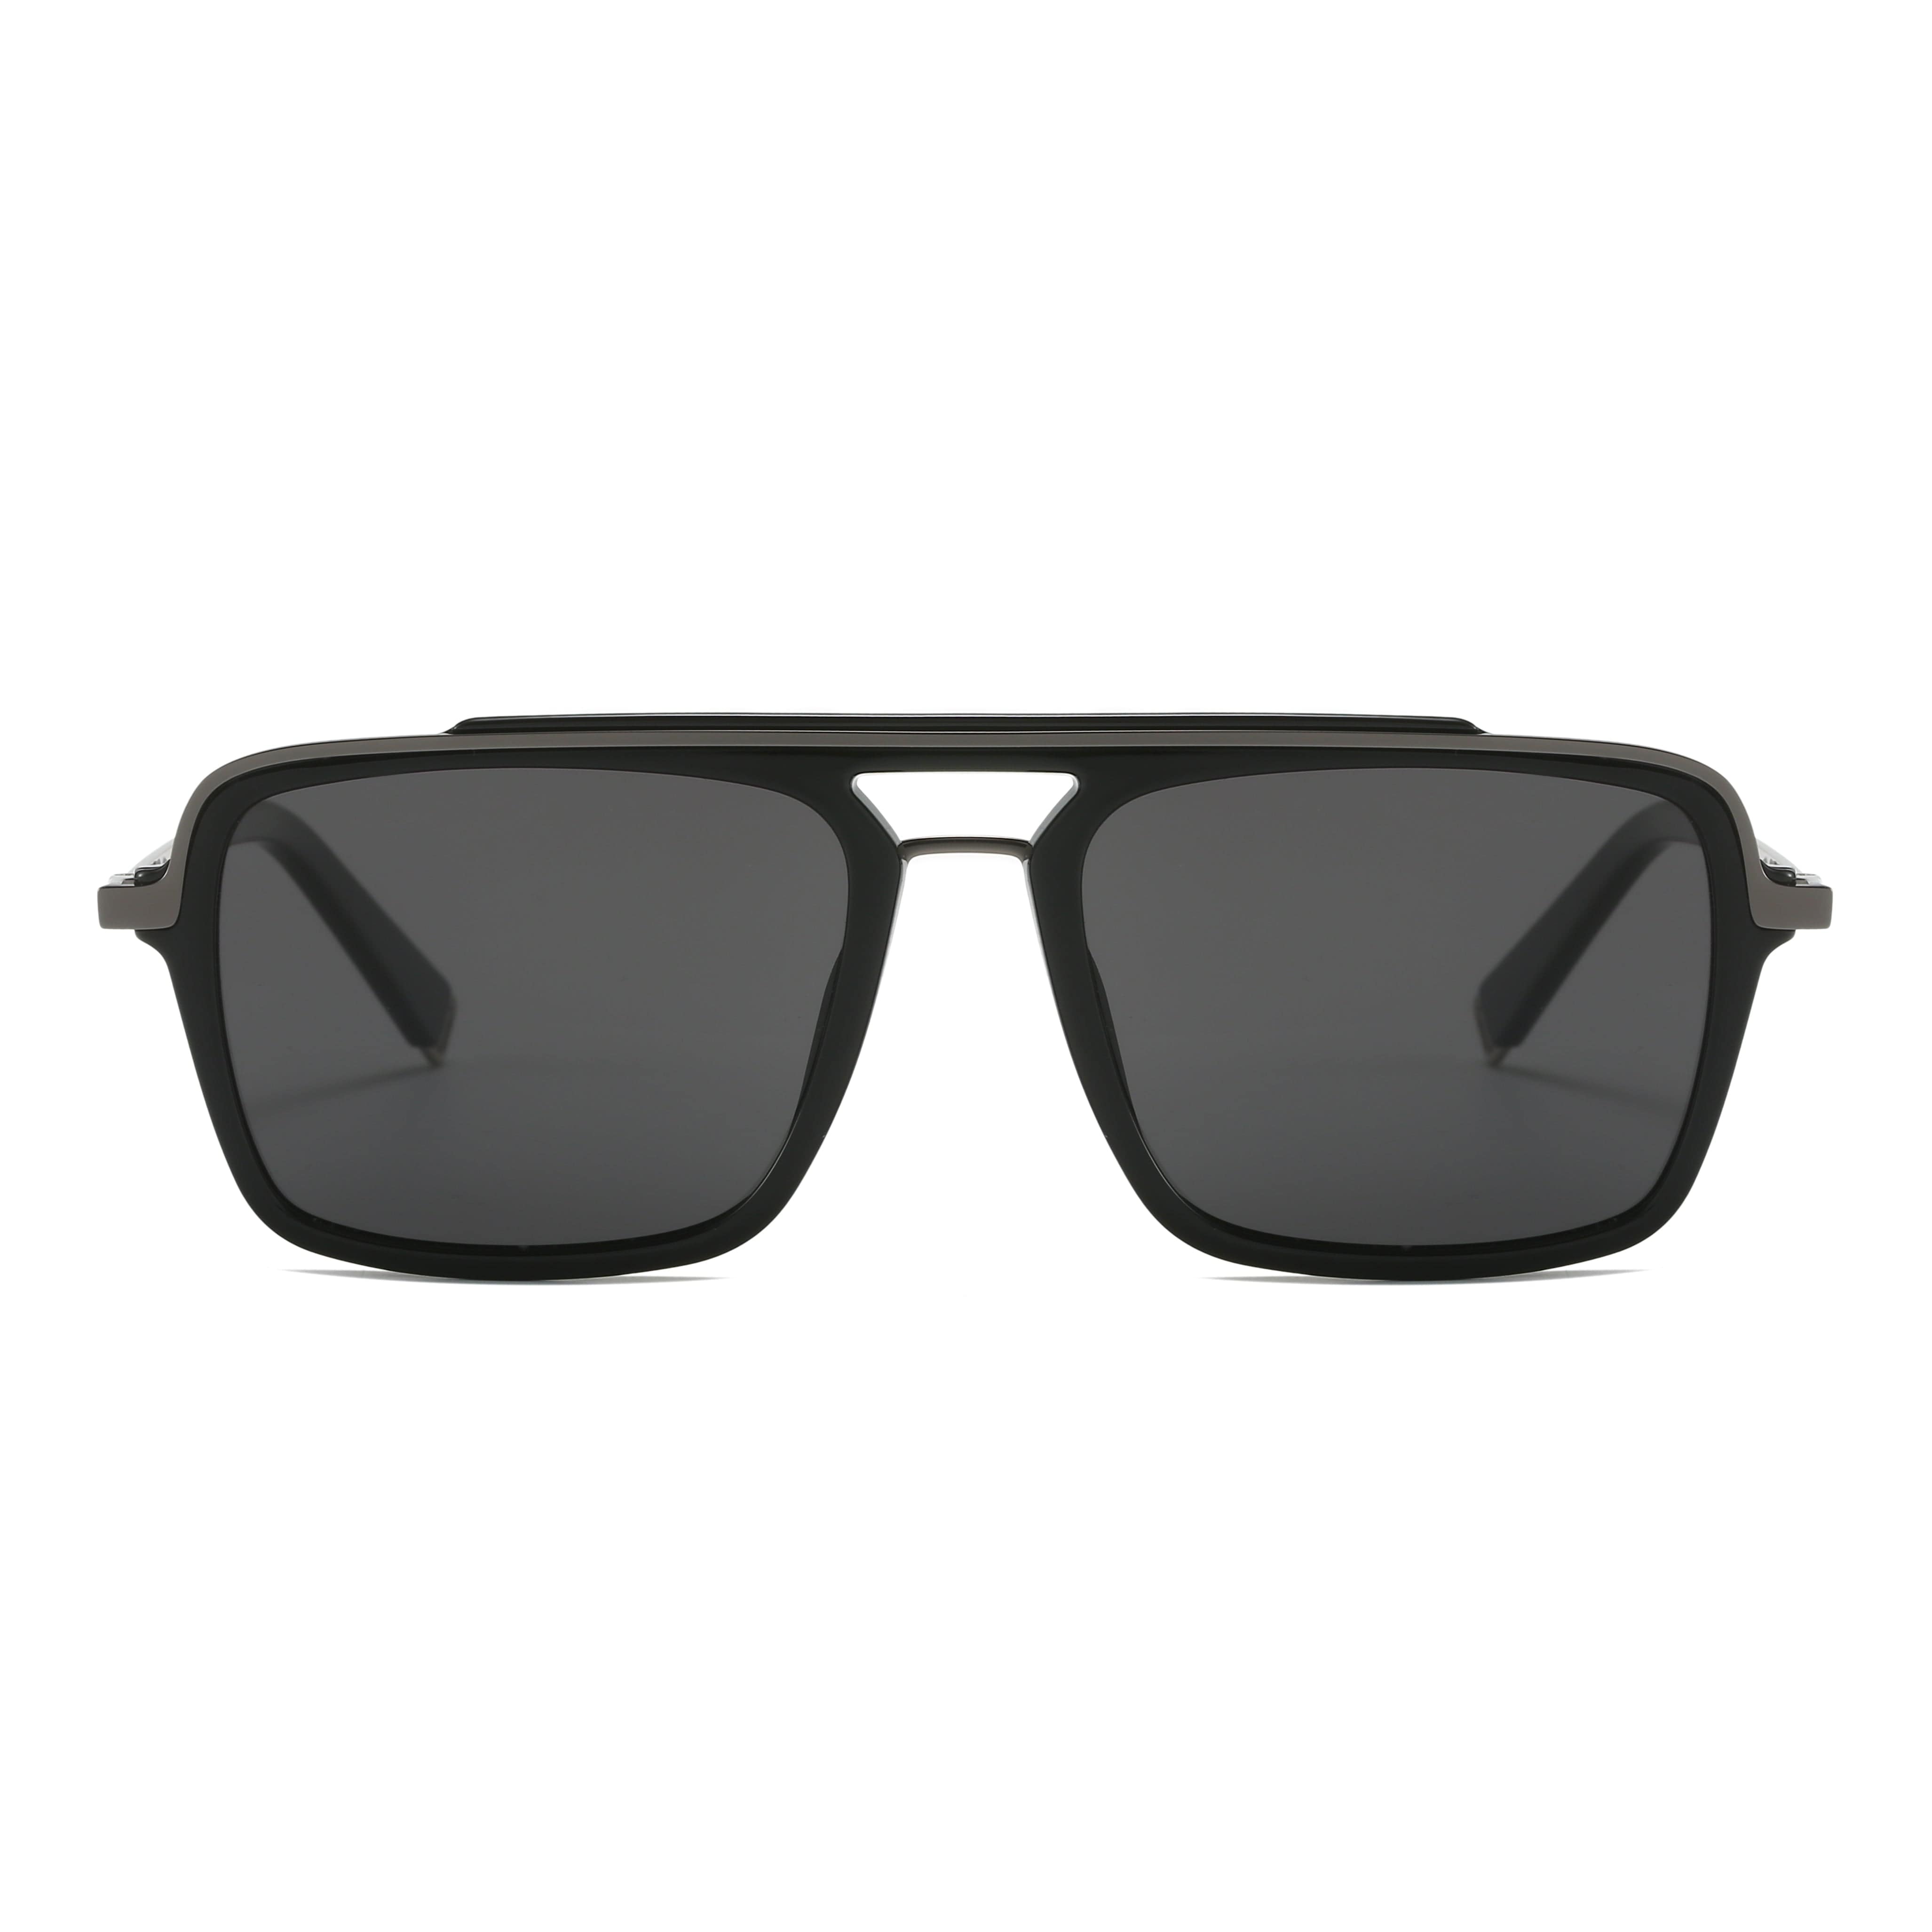 GIUSTIZIERI VECCHI Sunglasses Small / Black RadiantRay Uno